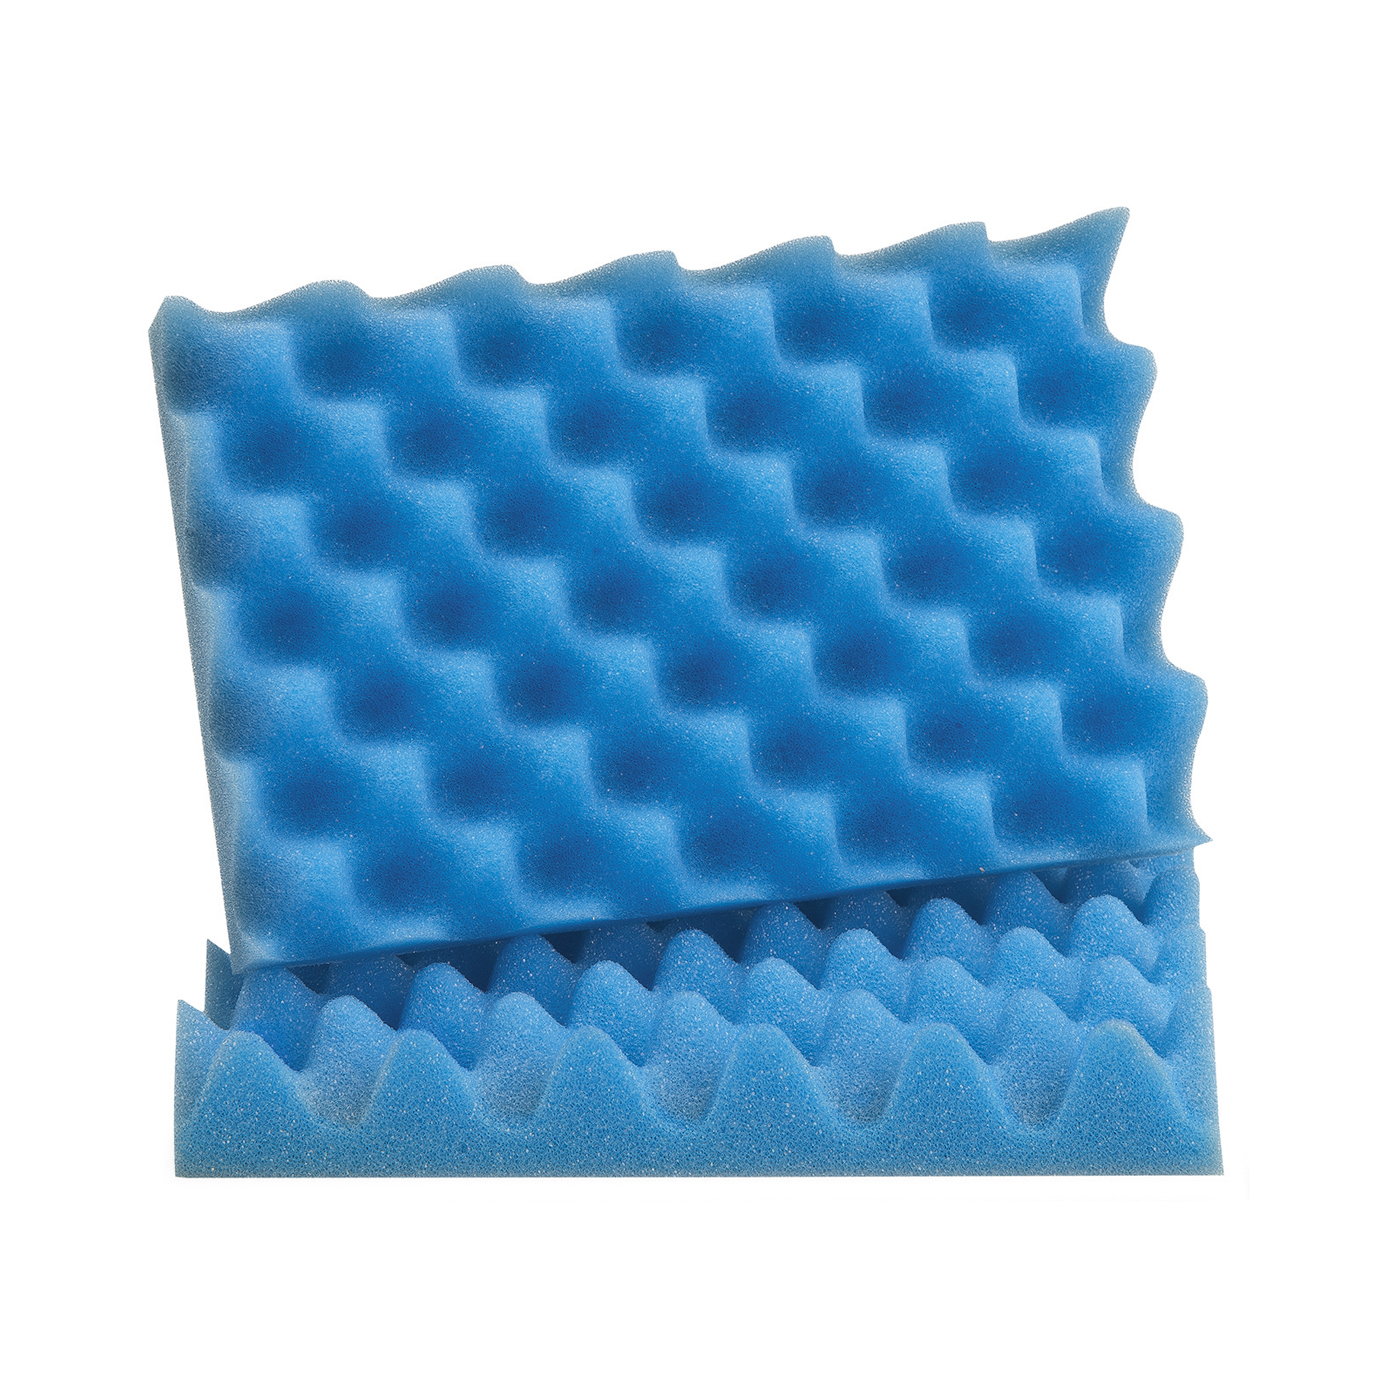 FINO Profiled Foam, for 1.3 l, Blue - 2 pieces